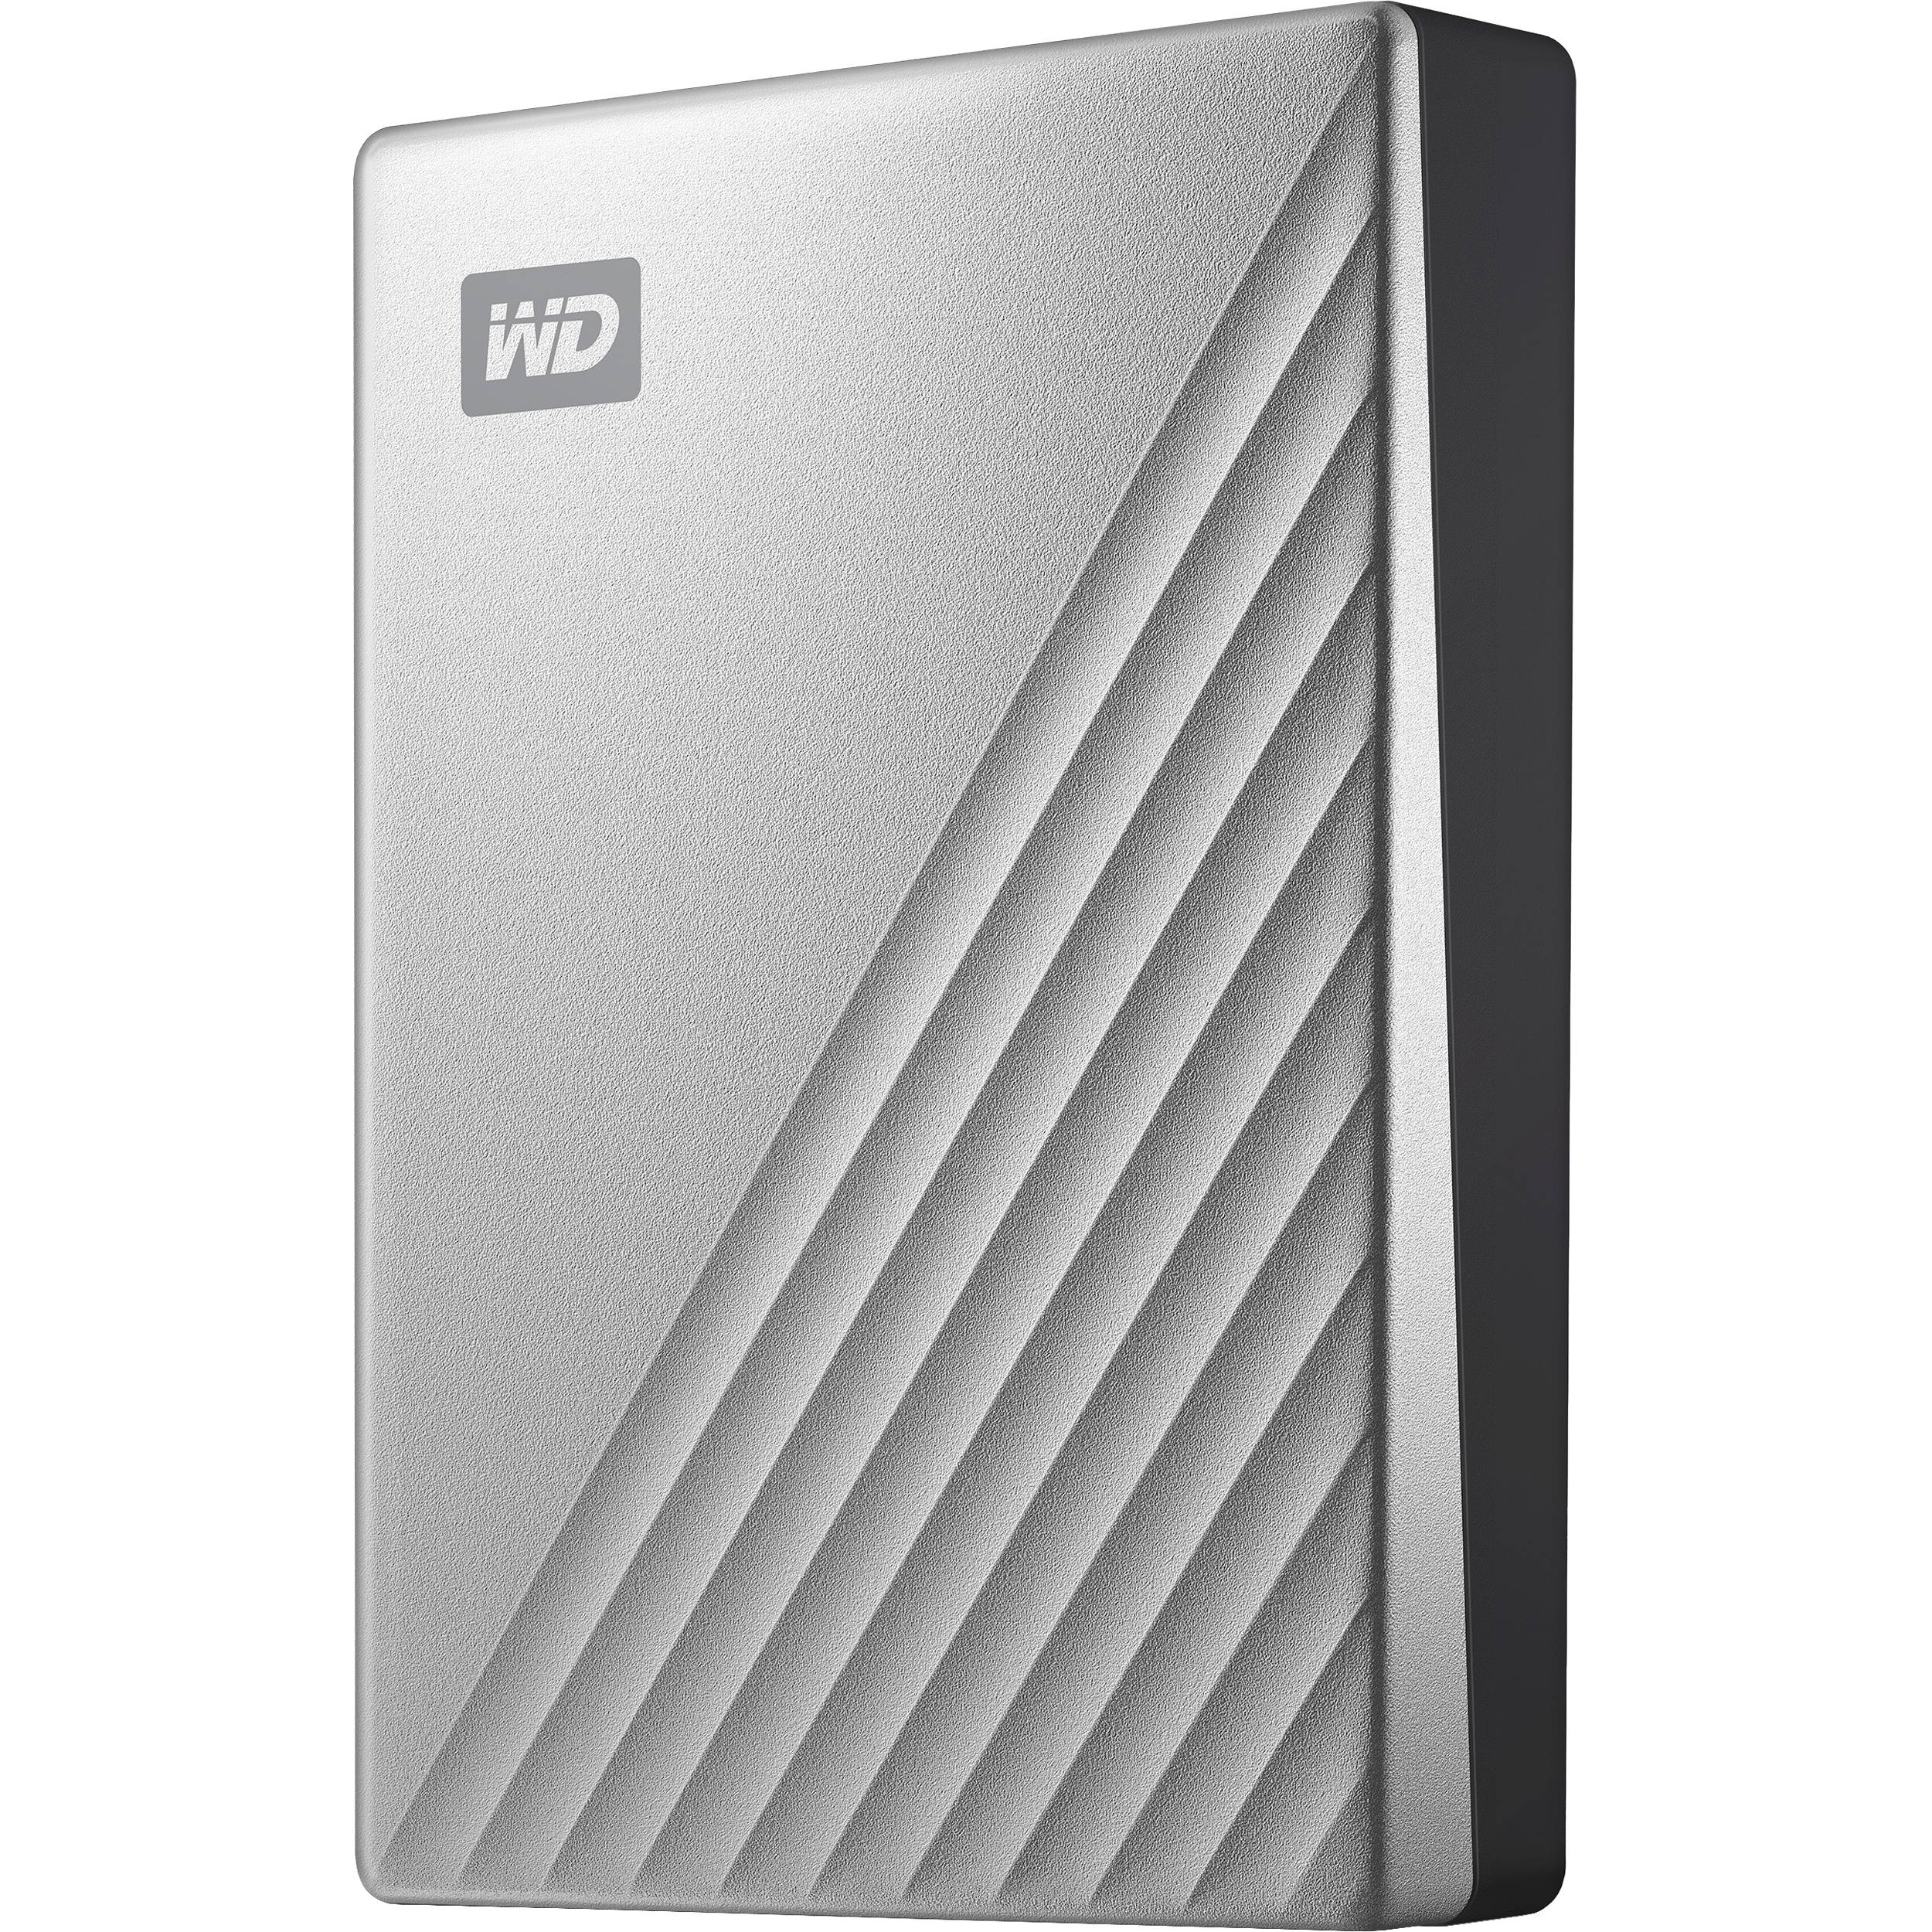 wd my passport 4tb external hard drive for mac cheap